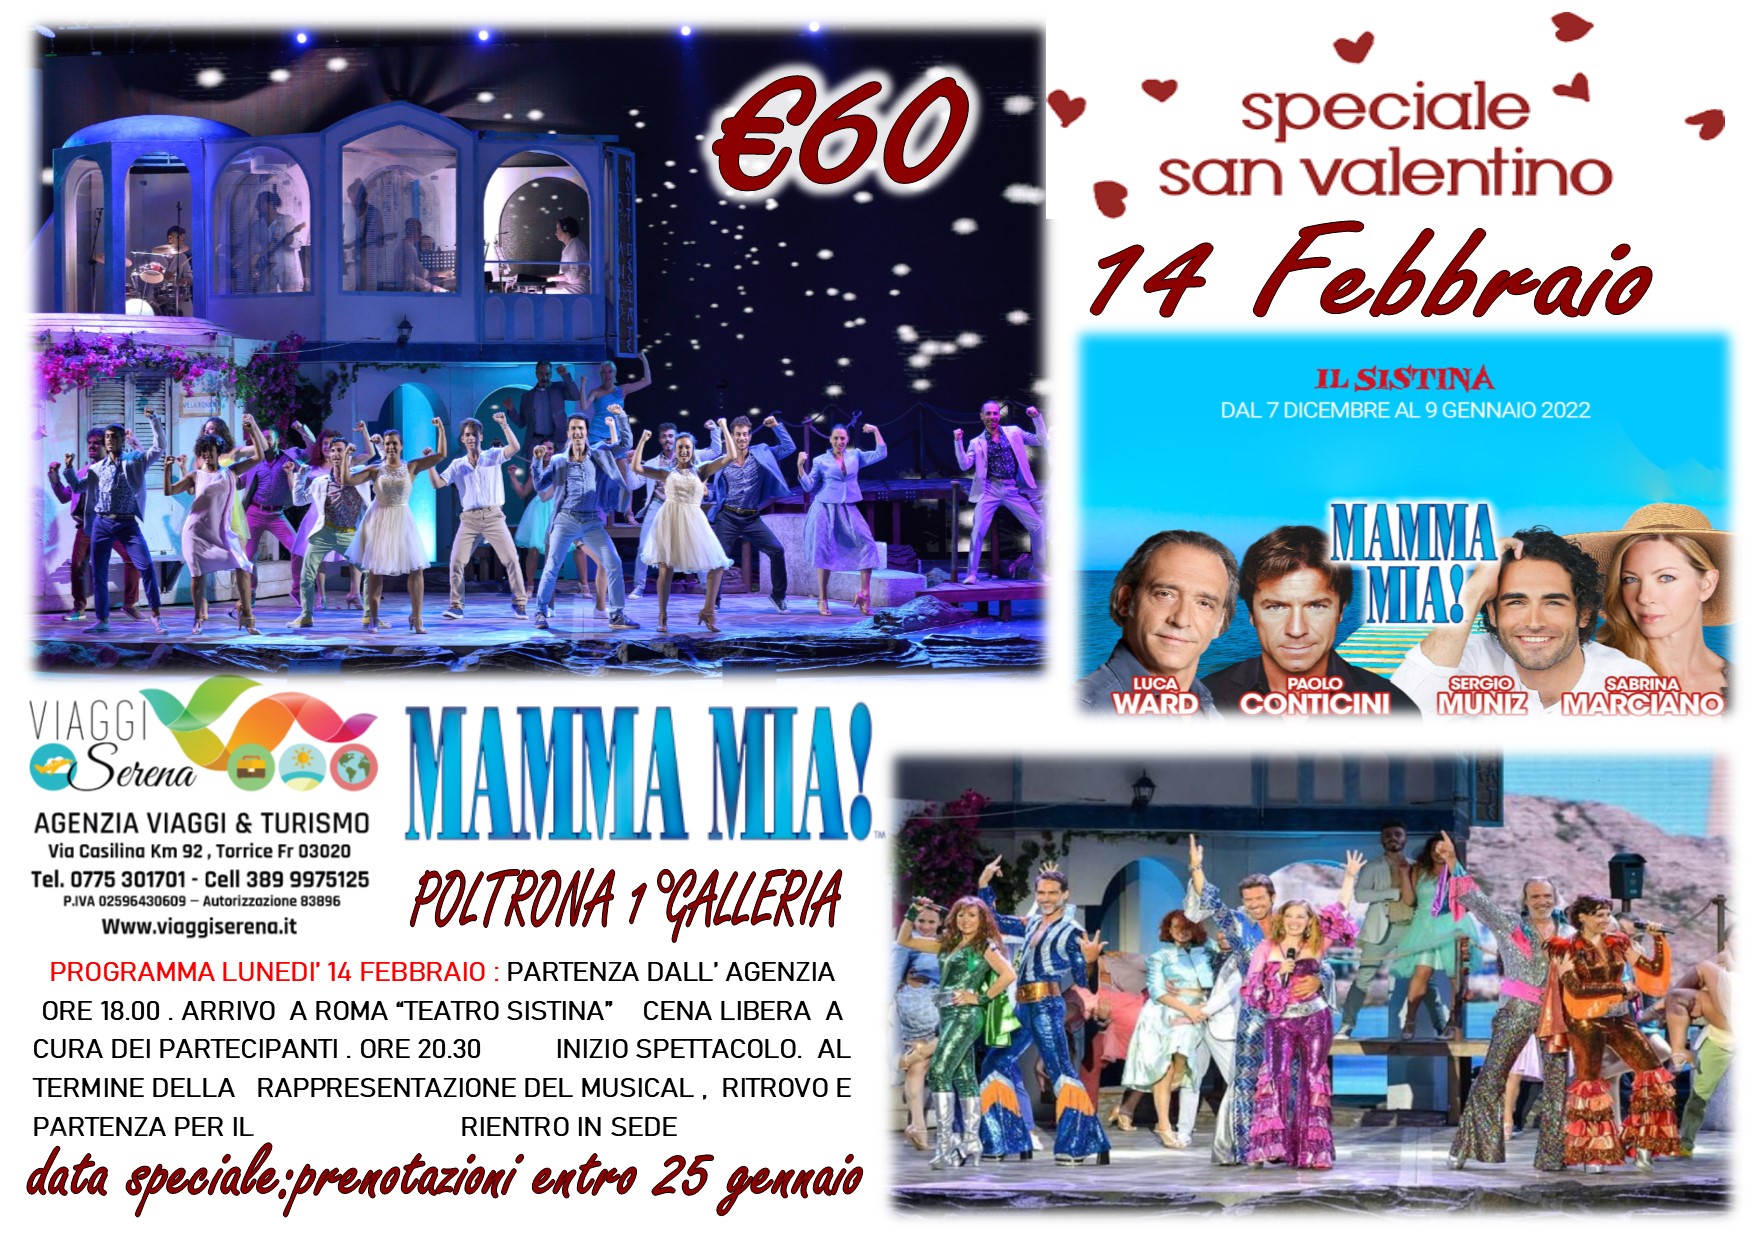 Viaggi di Gruppo: Teatro Sistina Musical San Valentino ” MAMMA MIA” 14 Febbraio € 60,00